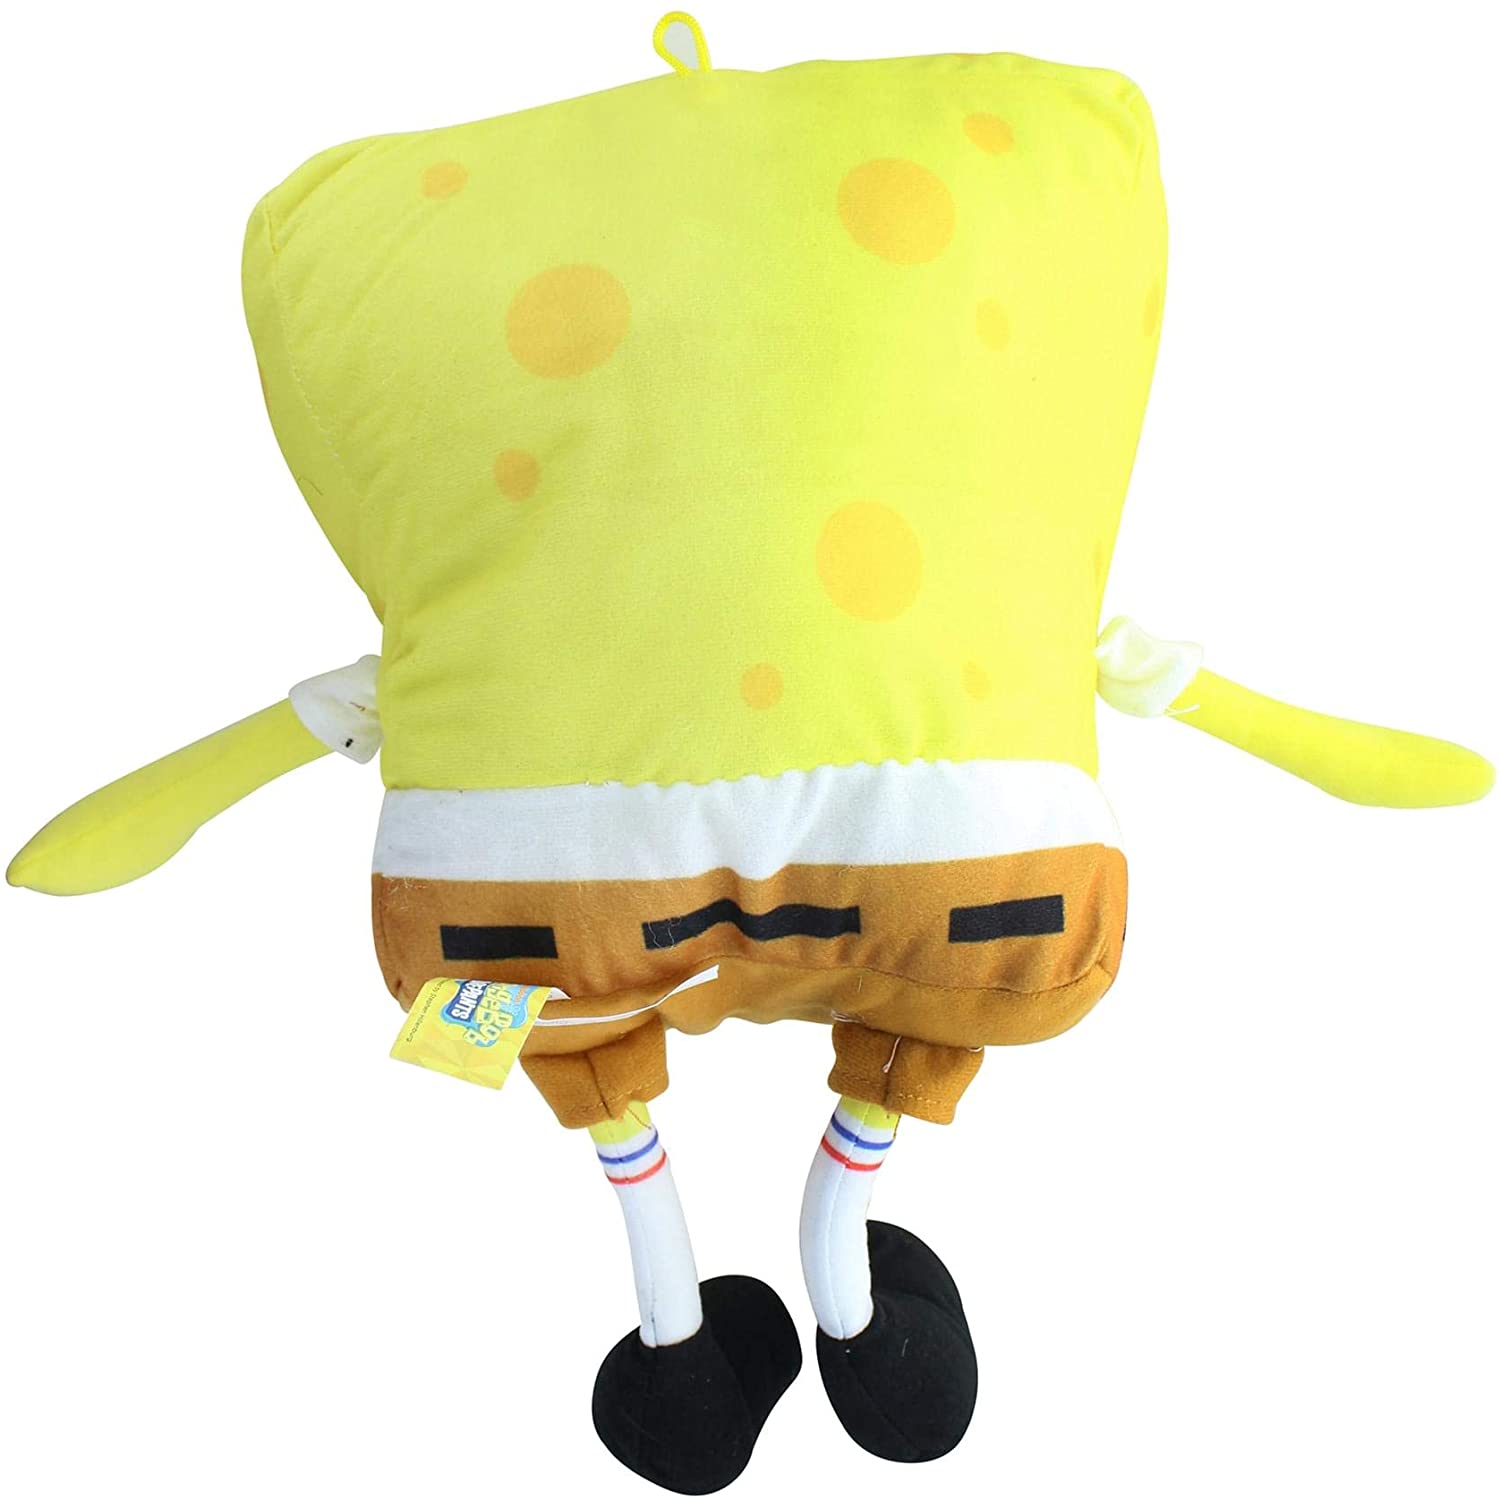 魅了 スポンジボブ カートゥーンネットワーク Spongebob キャラクター アメリカ限定多数 送料無料 Chucks Toys Spongebob Squarepants 16 5 Inch Character Plush Spongebobスポンジボブ カートゥーンネットワーク Spongebob キャラクター アメリカ限定多数 数量は